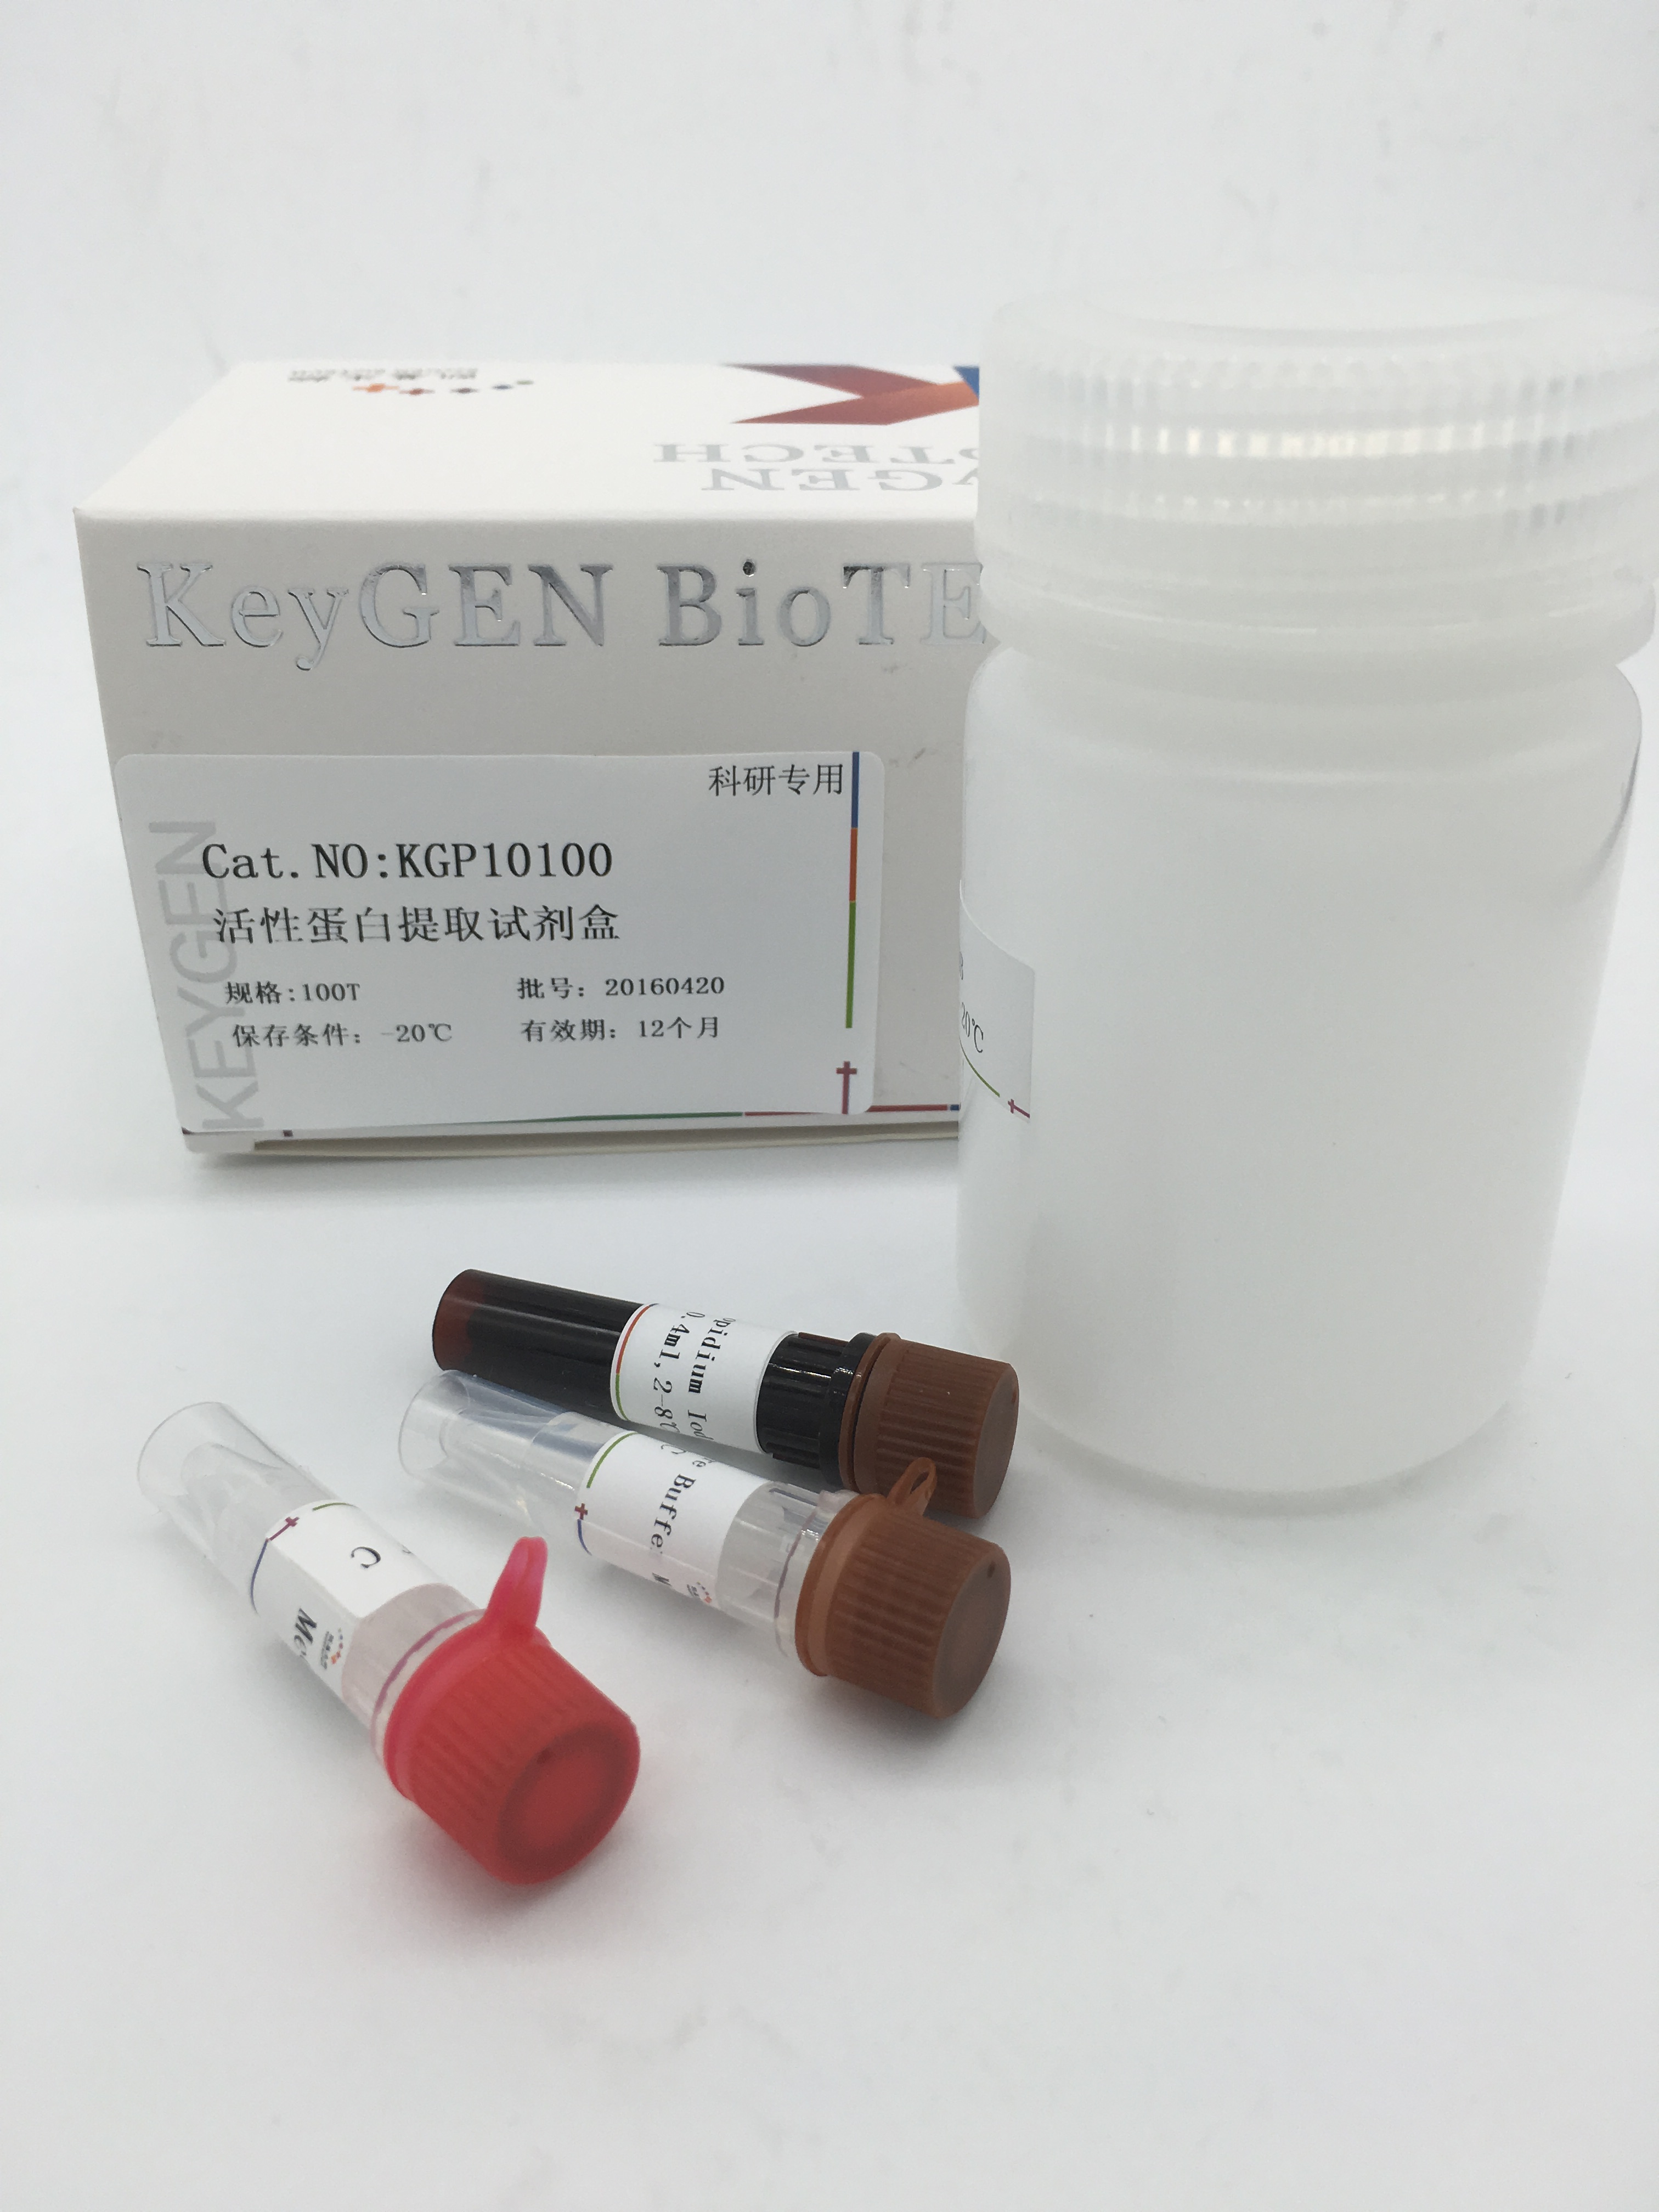 活性蛋白提取试剂盒